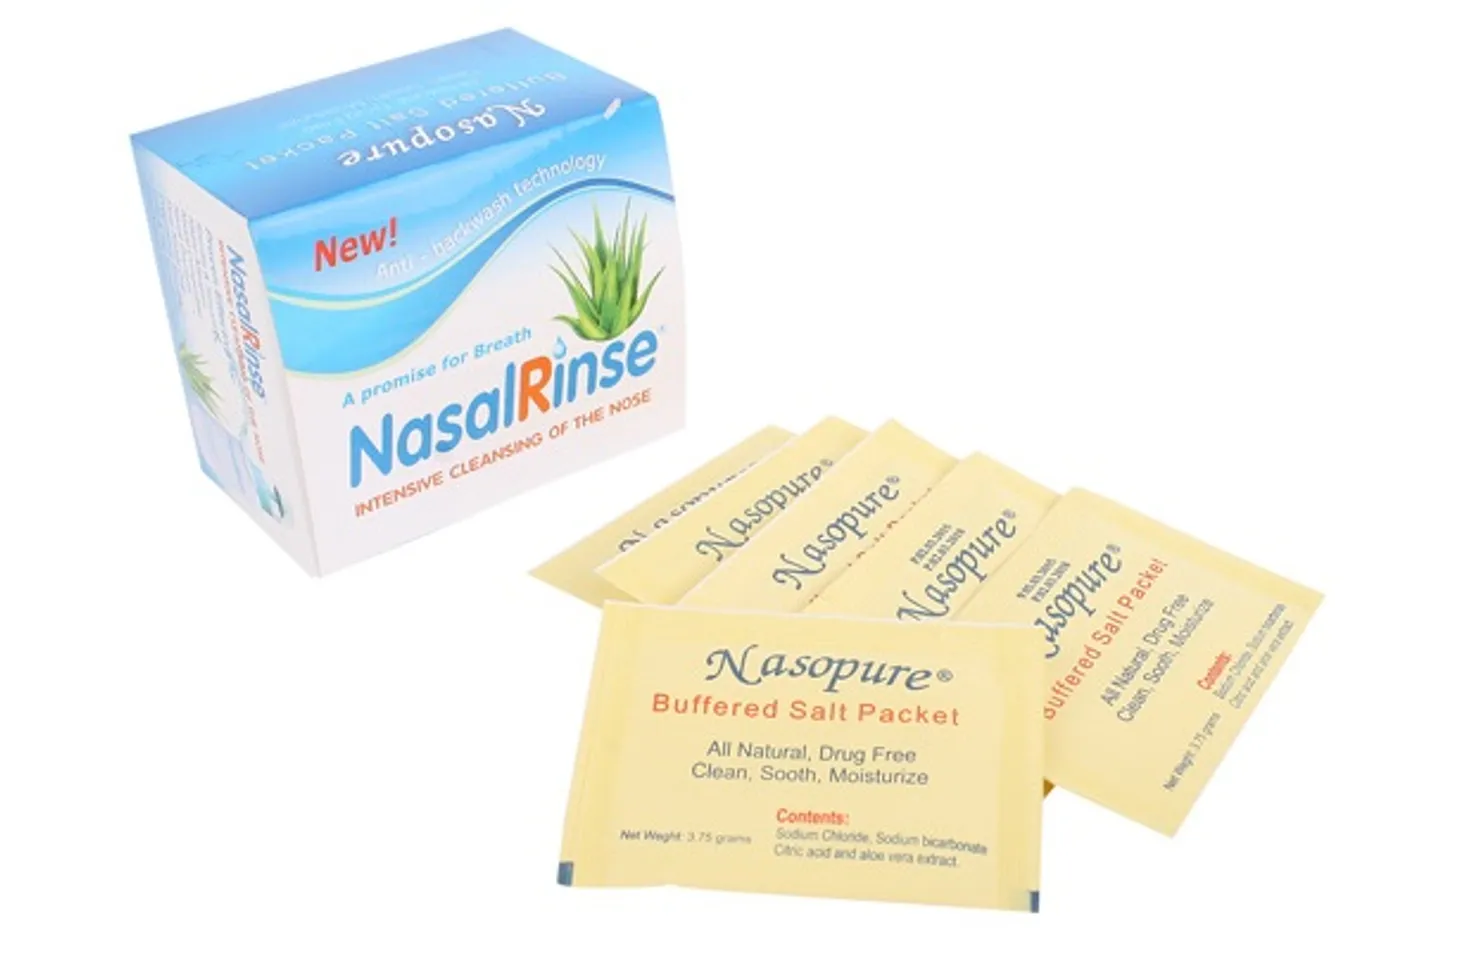 Hỗn hợp muối rửa mũi Nasal Rinse là dược phẩm natri clorua và natri bicarbonate, được dùng để hỗ trợ rửa mũi nhằm làm sạch các dịch nhầy, chất bụi bẩn bám trong mũi 